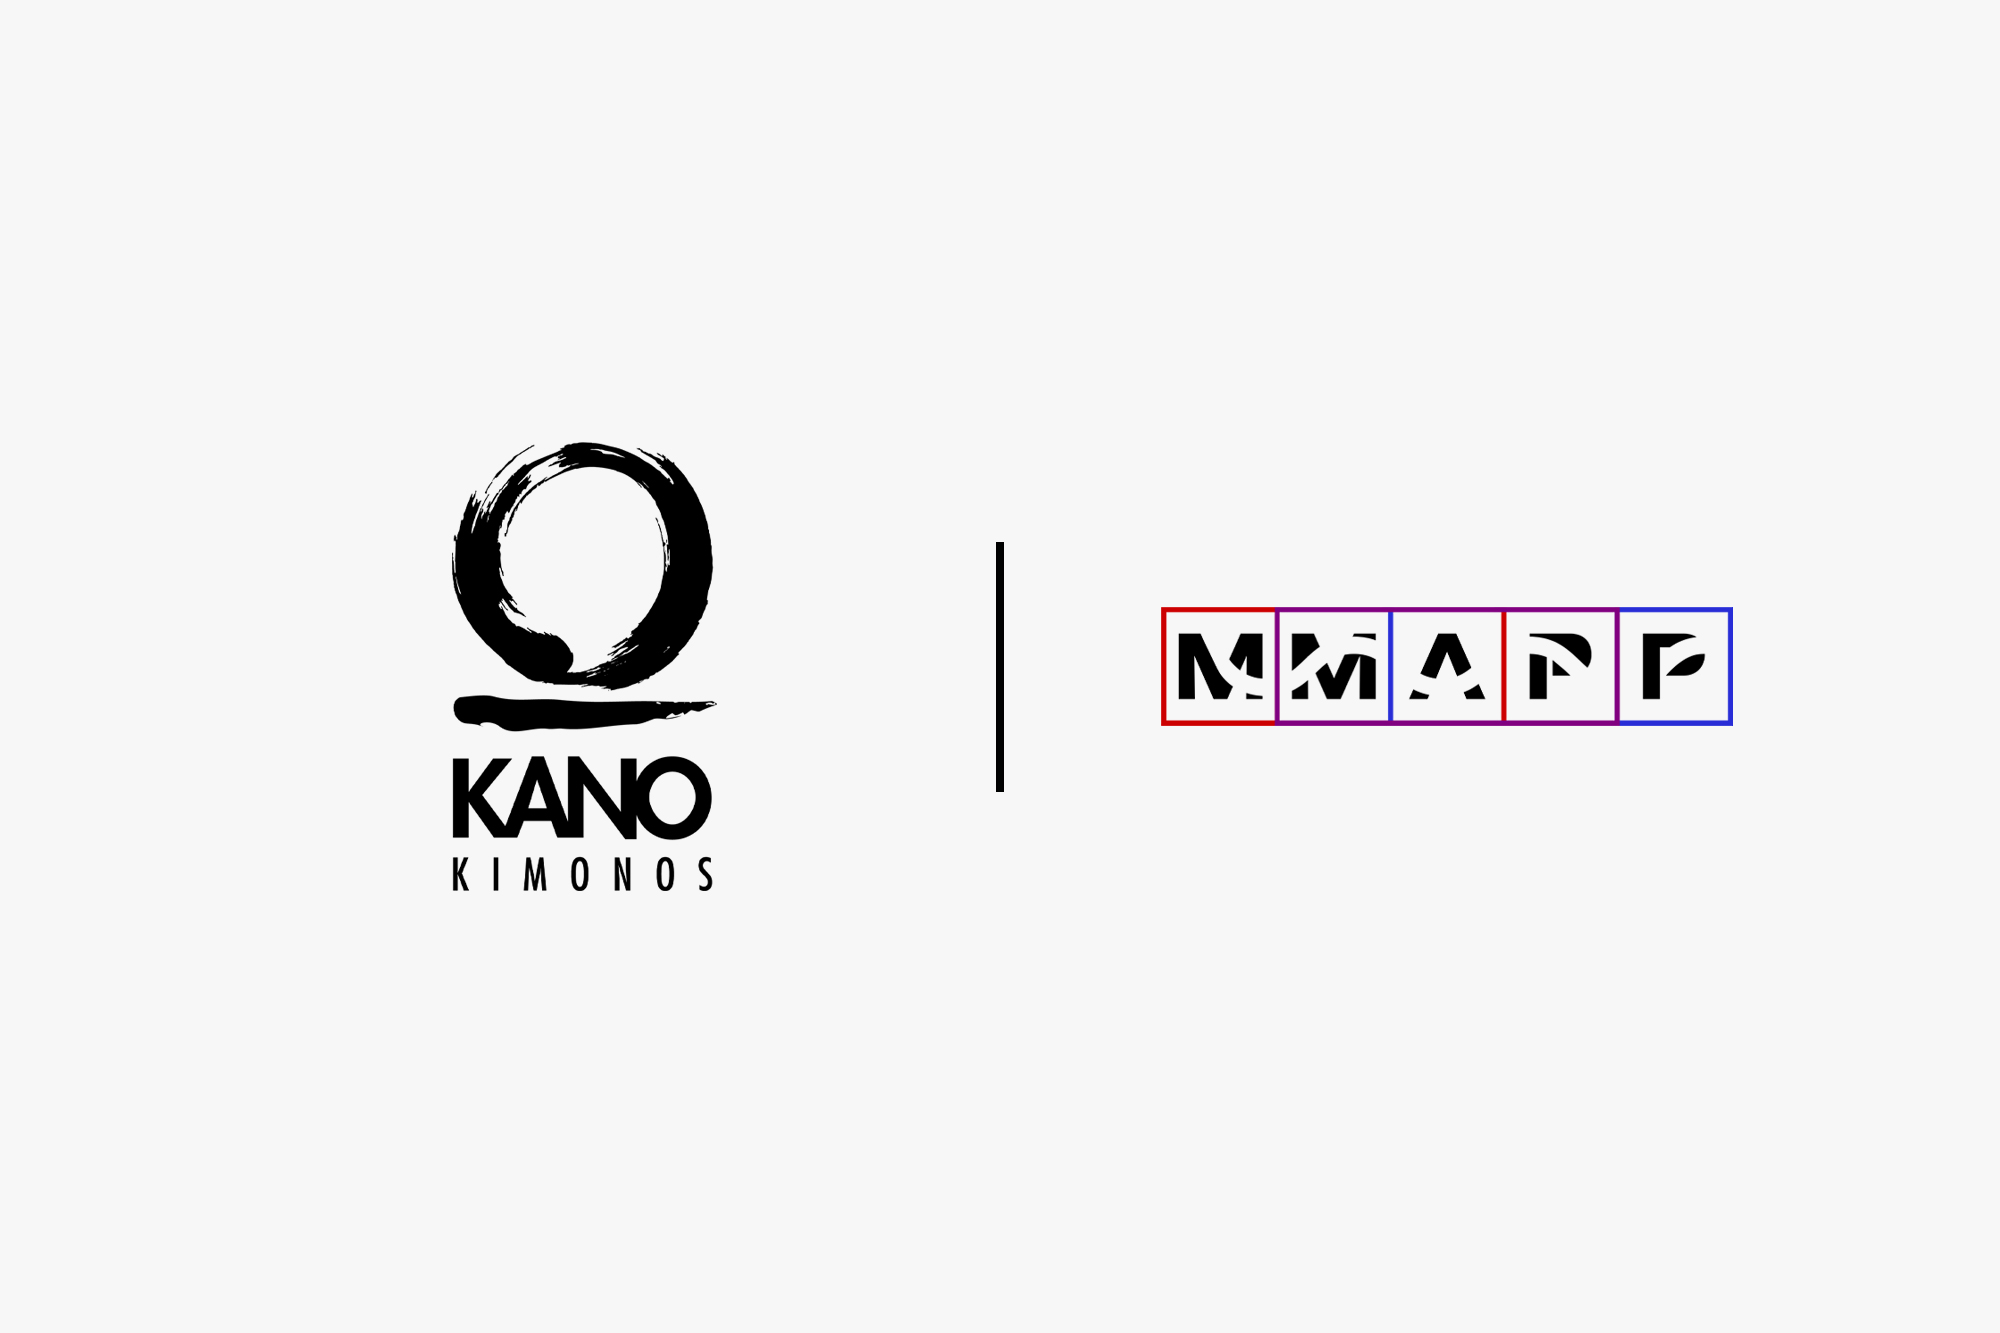 MMAPP & Kano Kimonos sponsor the 2022 IMMAF Euros